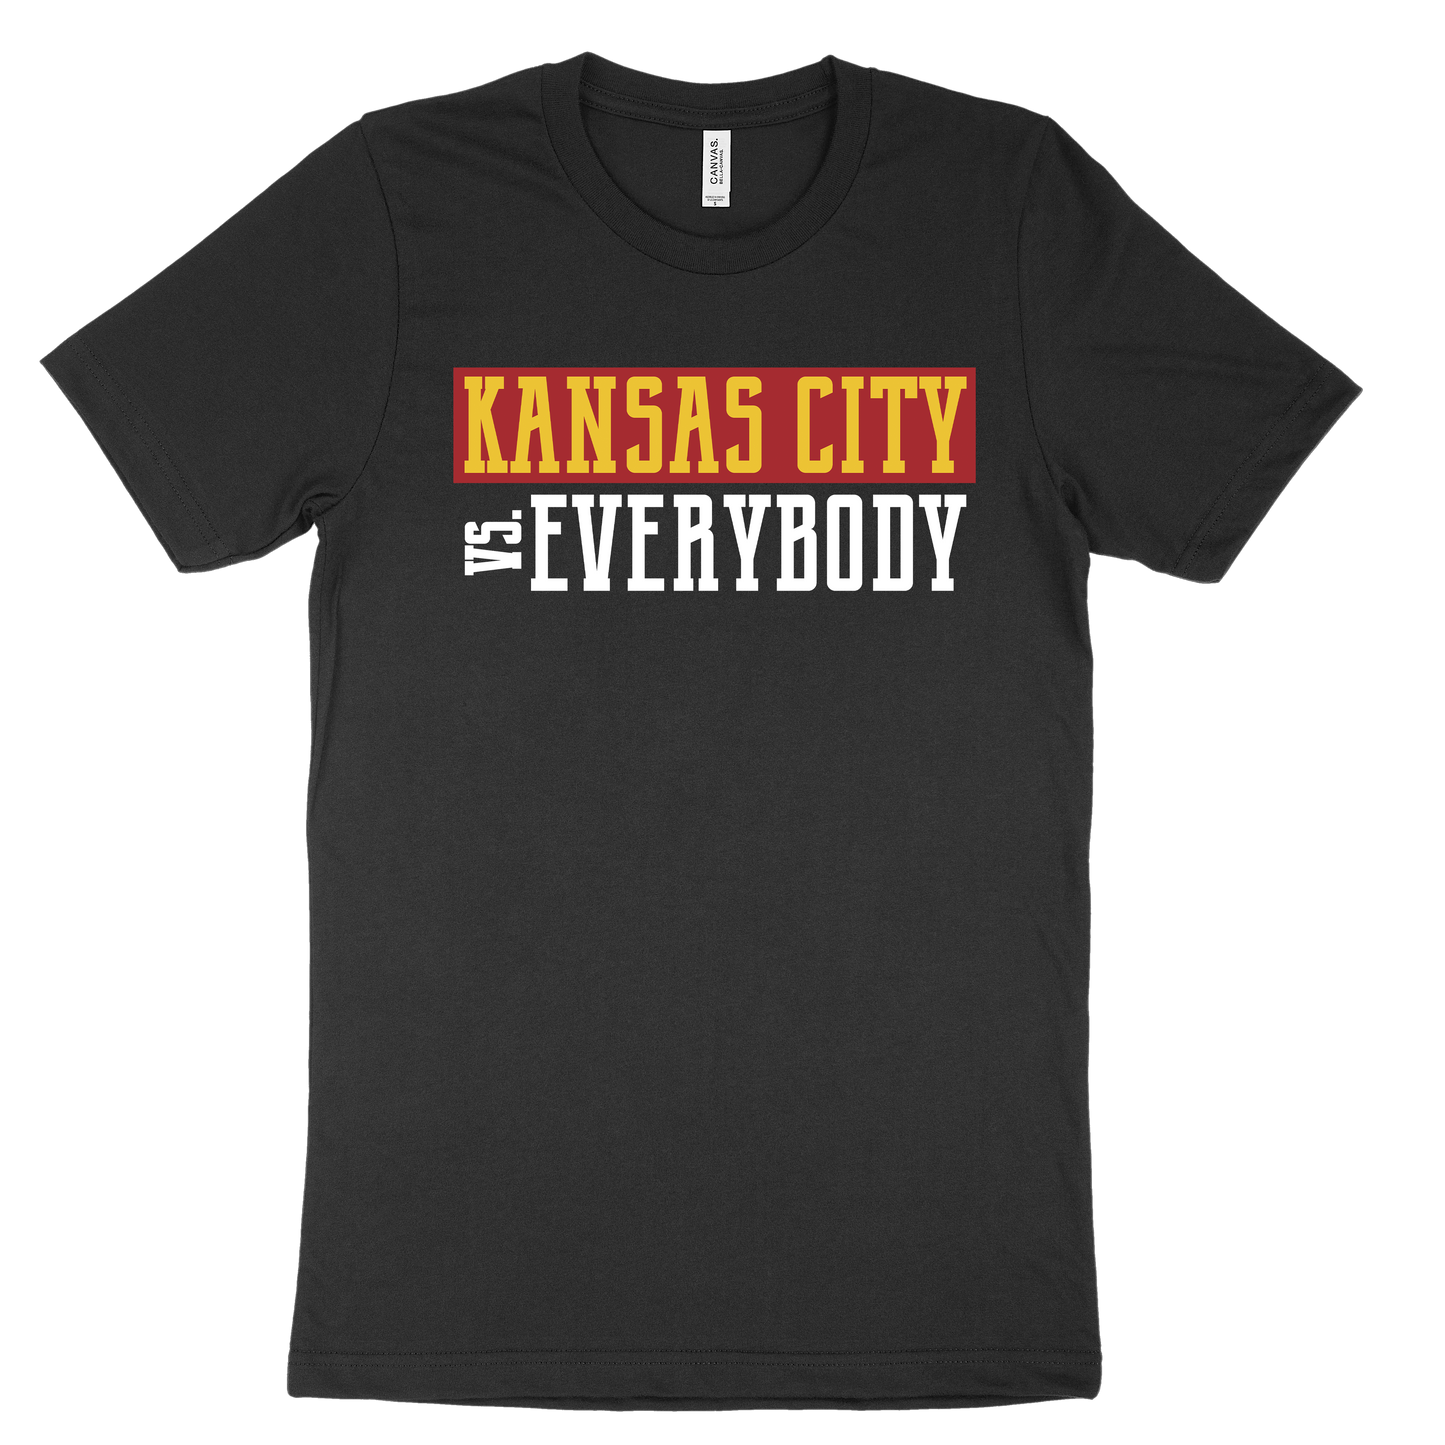 Kansas City vs. Everybody Tee - Black